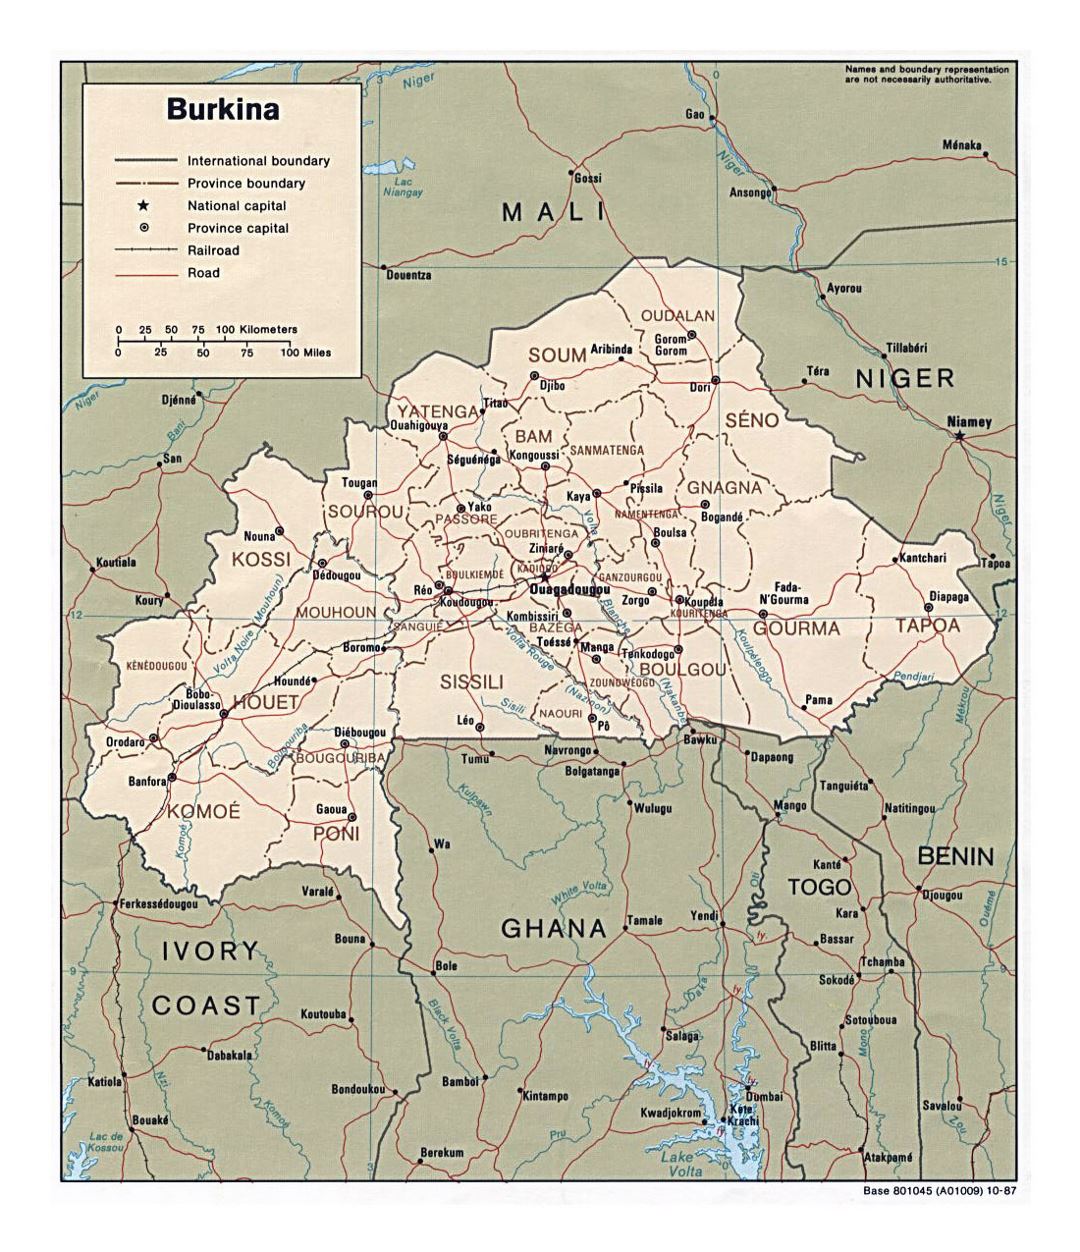 Детальная политическая и административная карта Буркина-Фасо с дорогами, железными дорогами и крупными городами - 1987